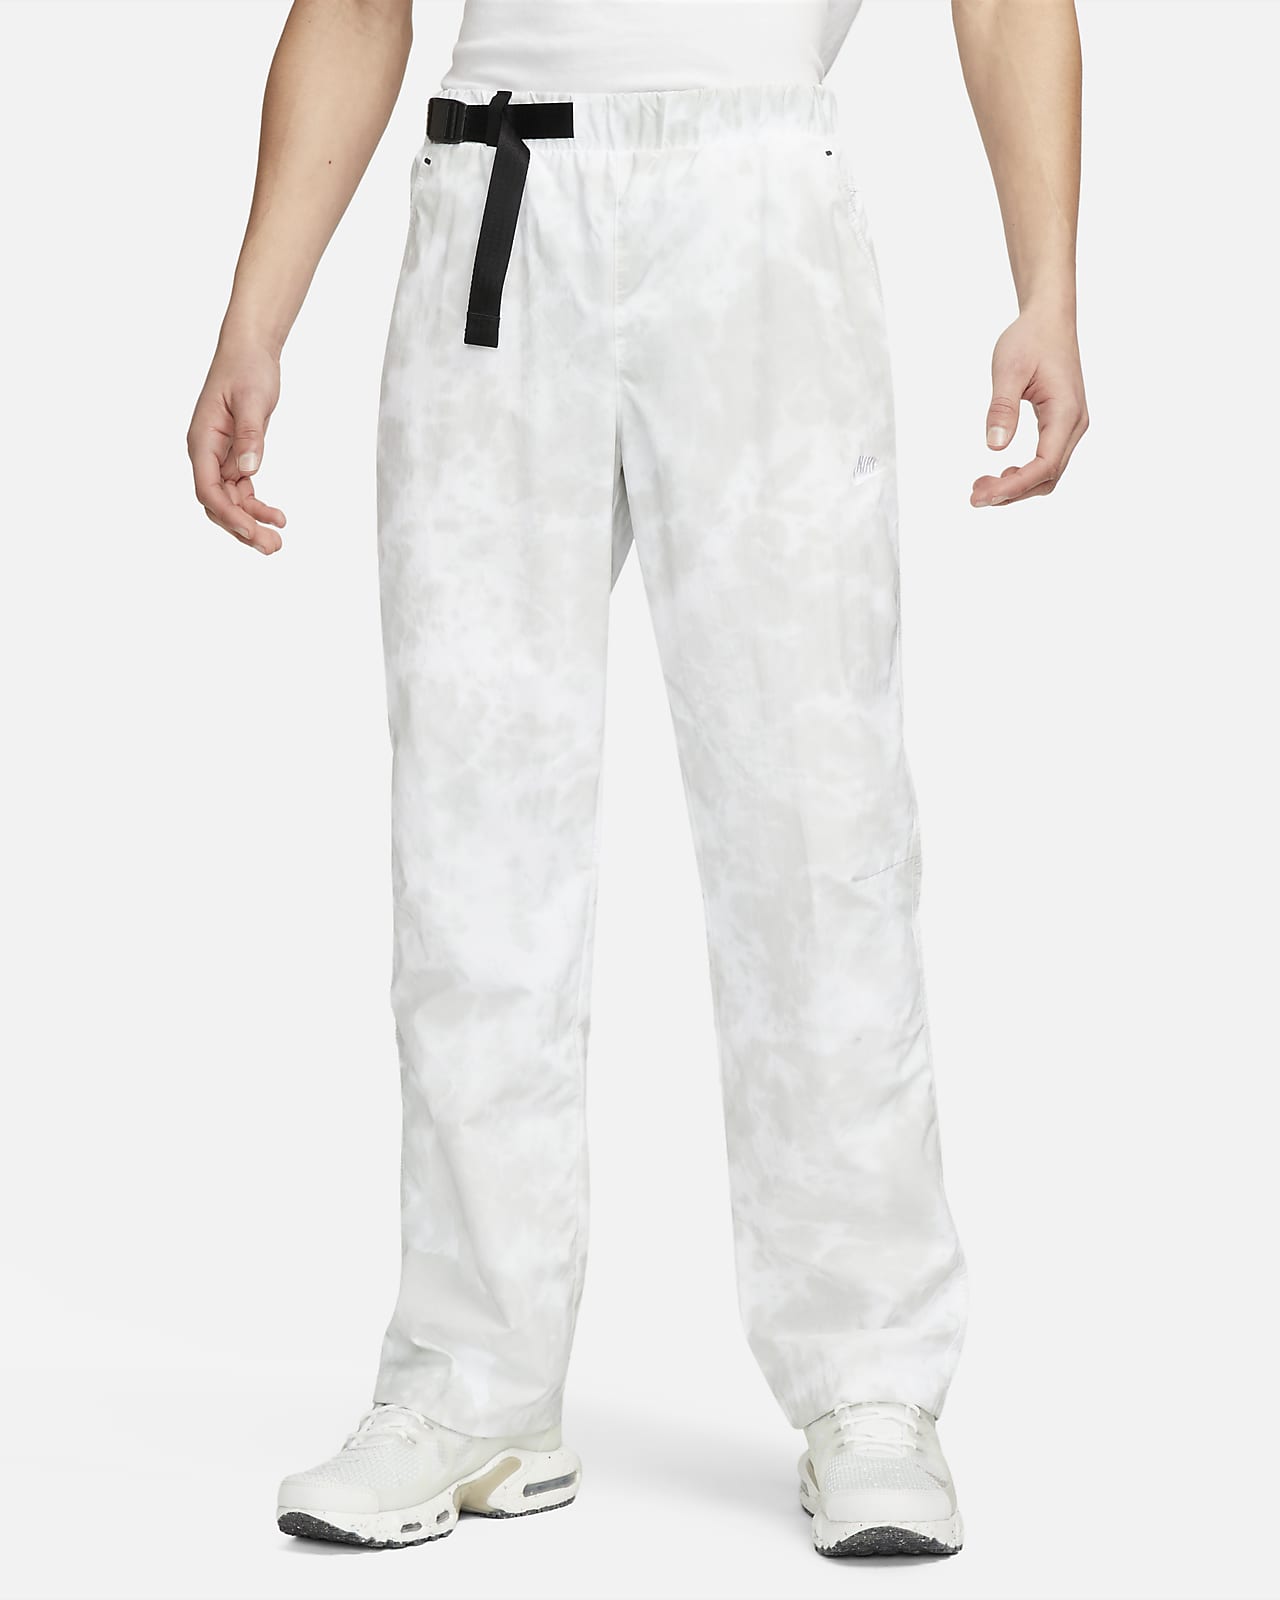 Nike Sportswear Tech Knit Pants Gunsmoke 892553-036 Men's XL Retail $190